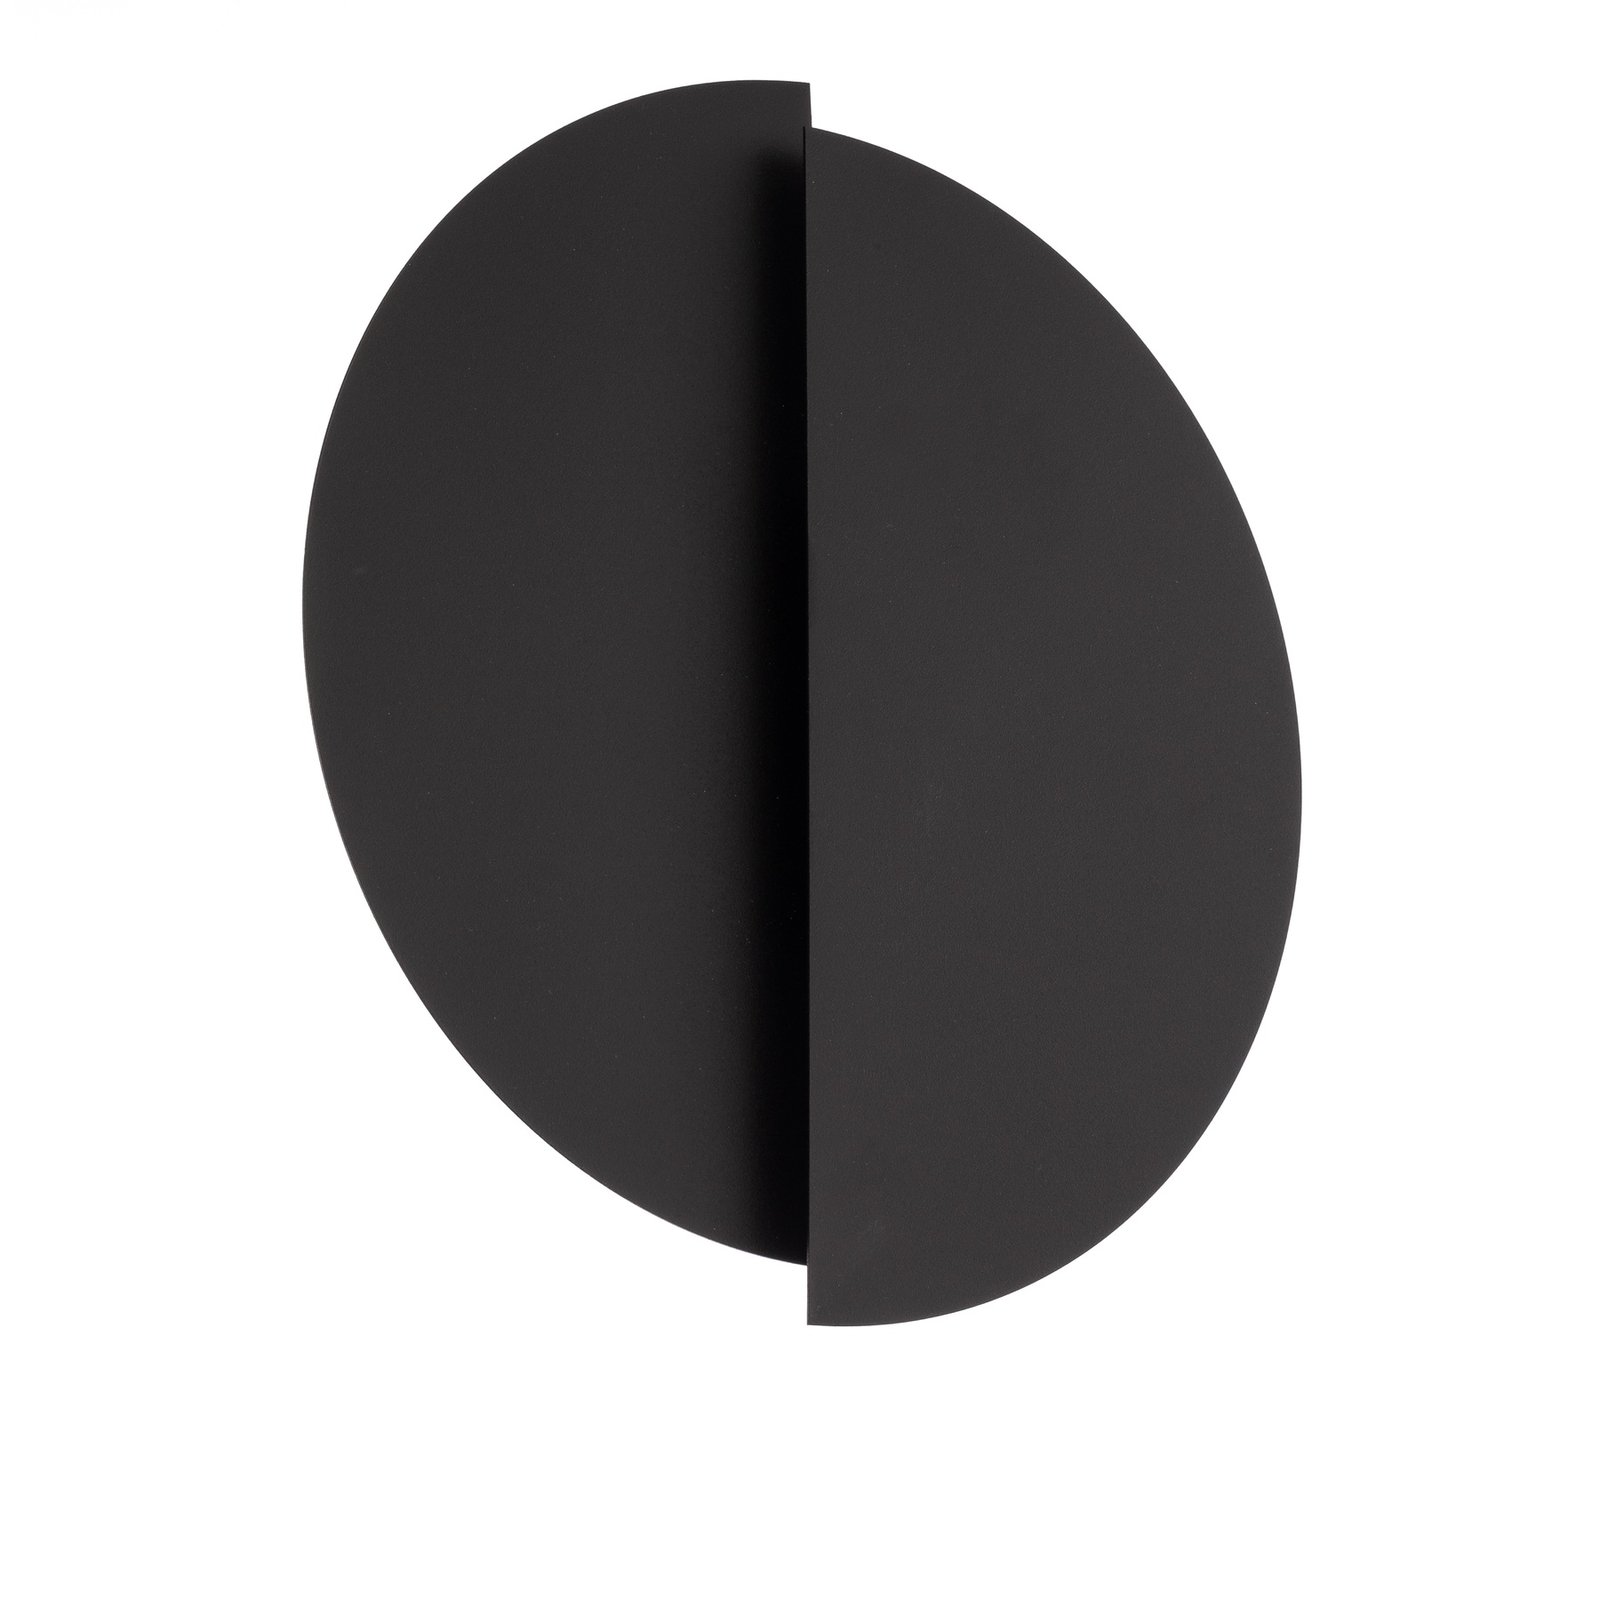 Stenska svetilka Form 9, 28 cm x 32 cm, črna